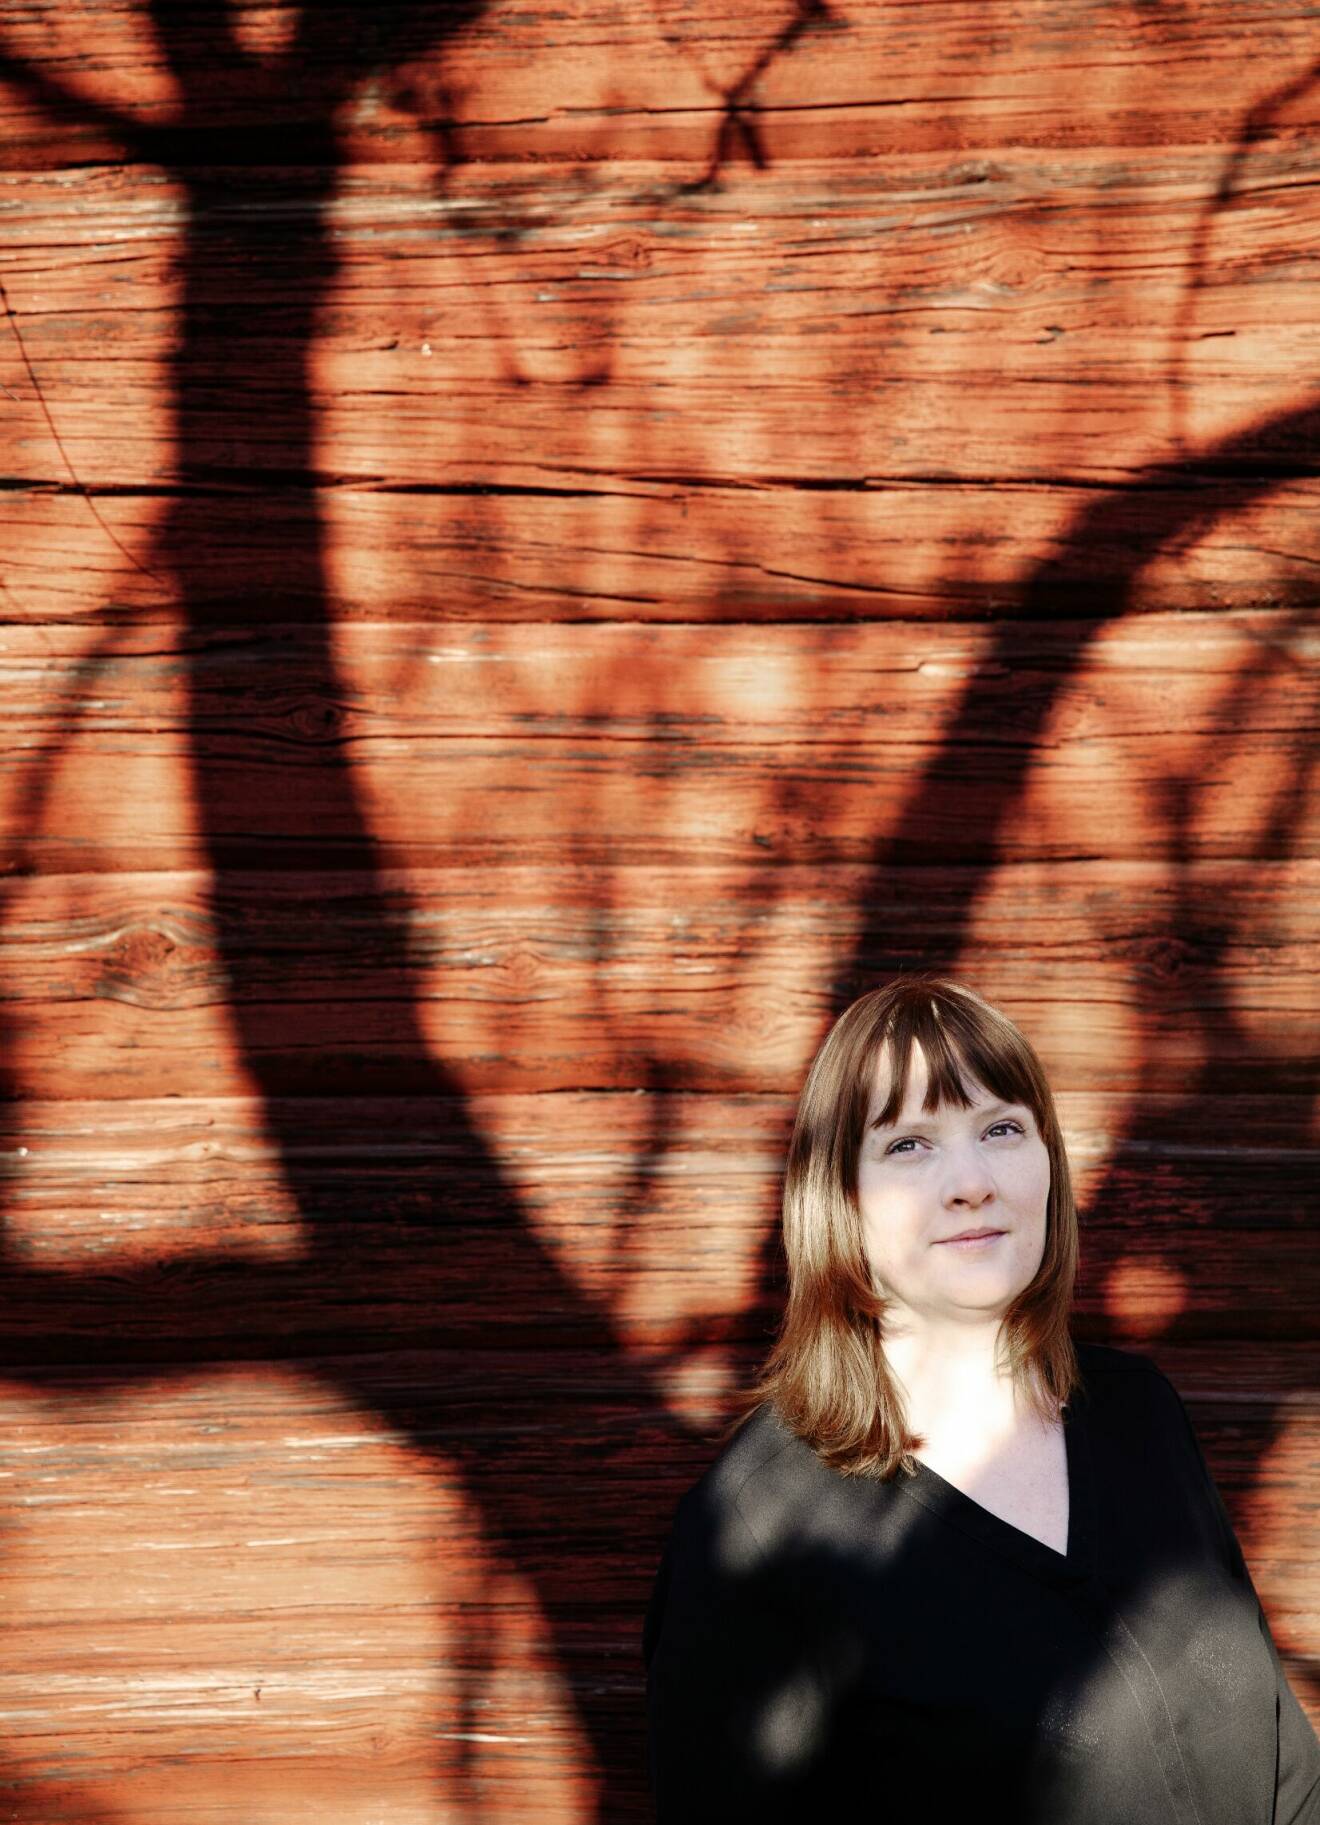 När författaren Karin Janson var 22 år fick hon veta att hon har en sköldkörtelsjukdom. Här vid en solkysst faluröd timmervägg.